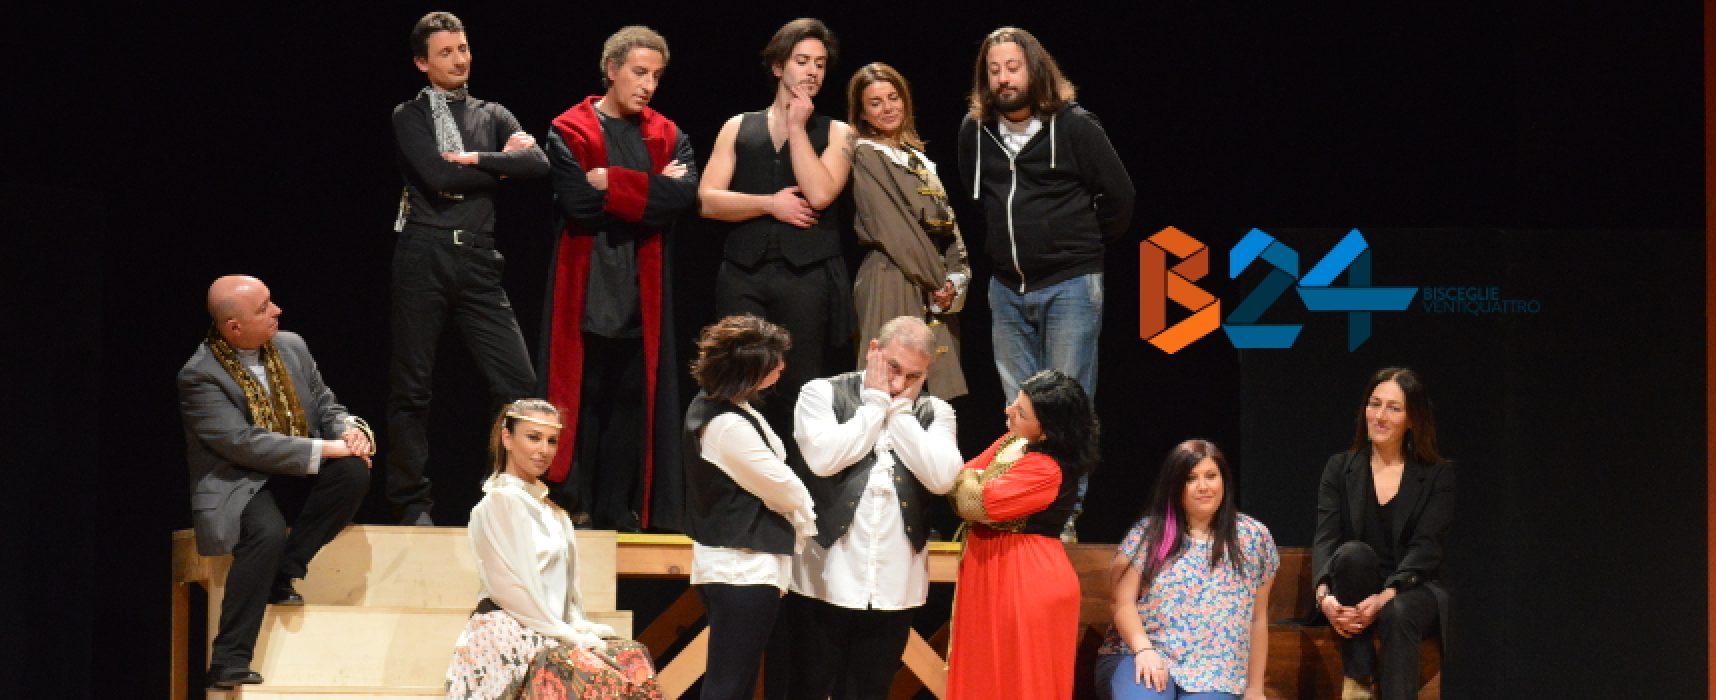 Compagnia dei Teatranti, ansie e vanità degli attori messe in scena al Garibaldi / FOTO